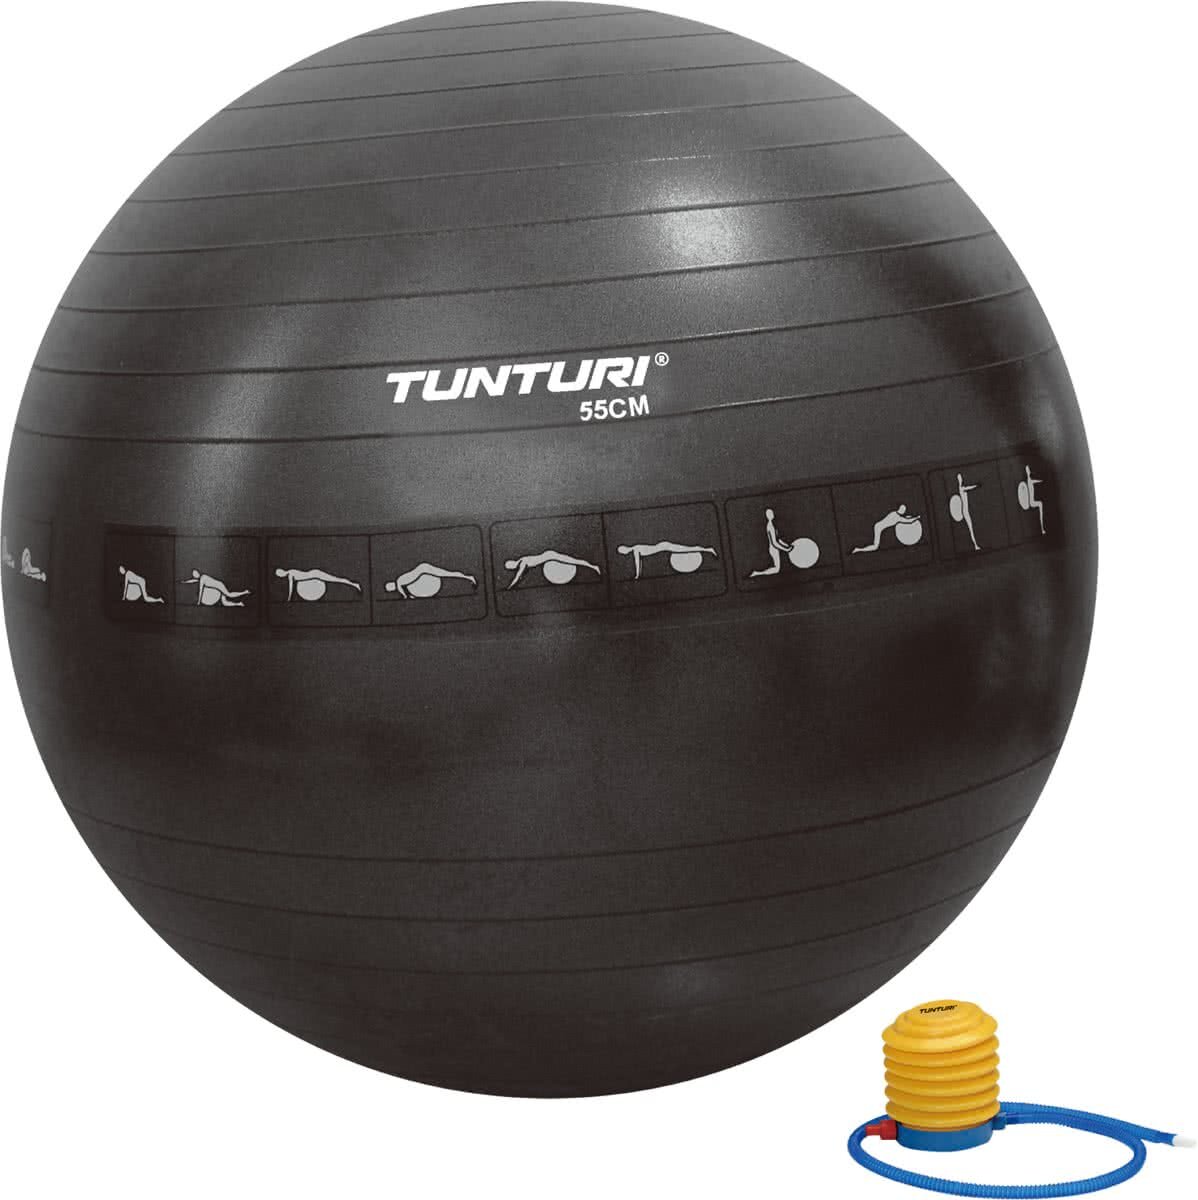 Tunturi Tunturi Anti-Burst Fitnessbal 55cm